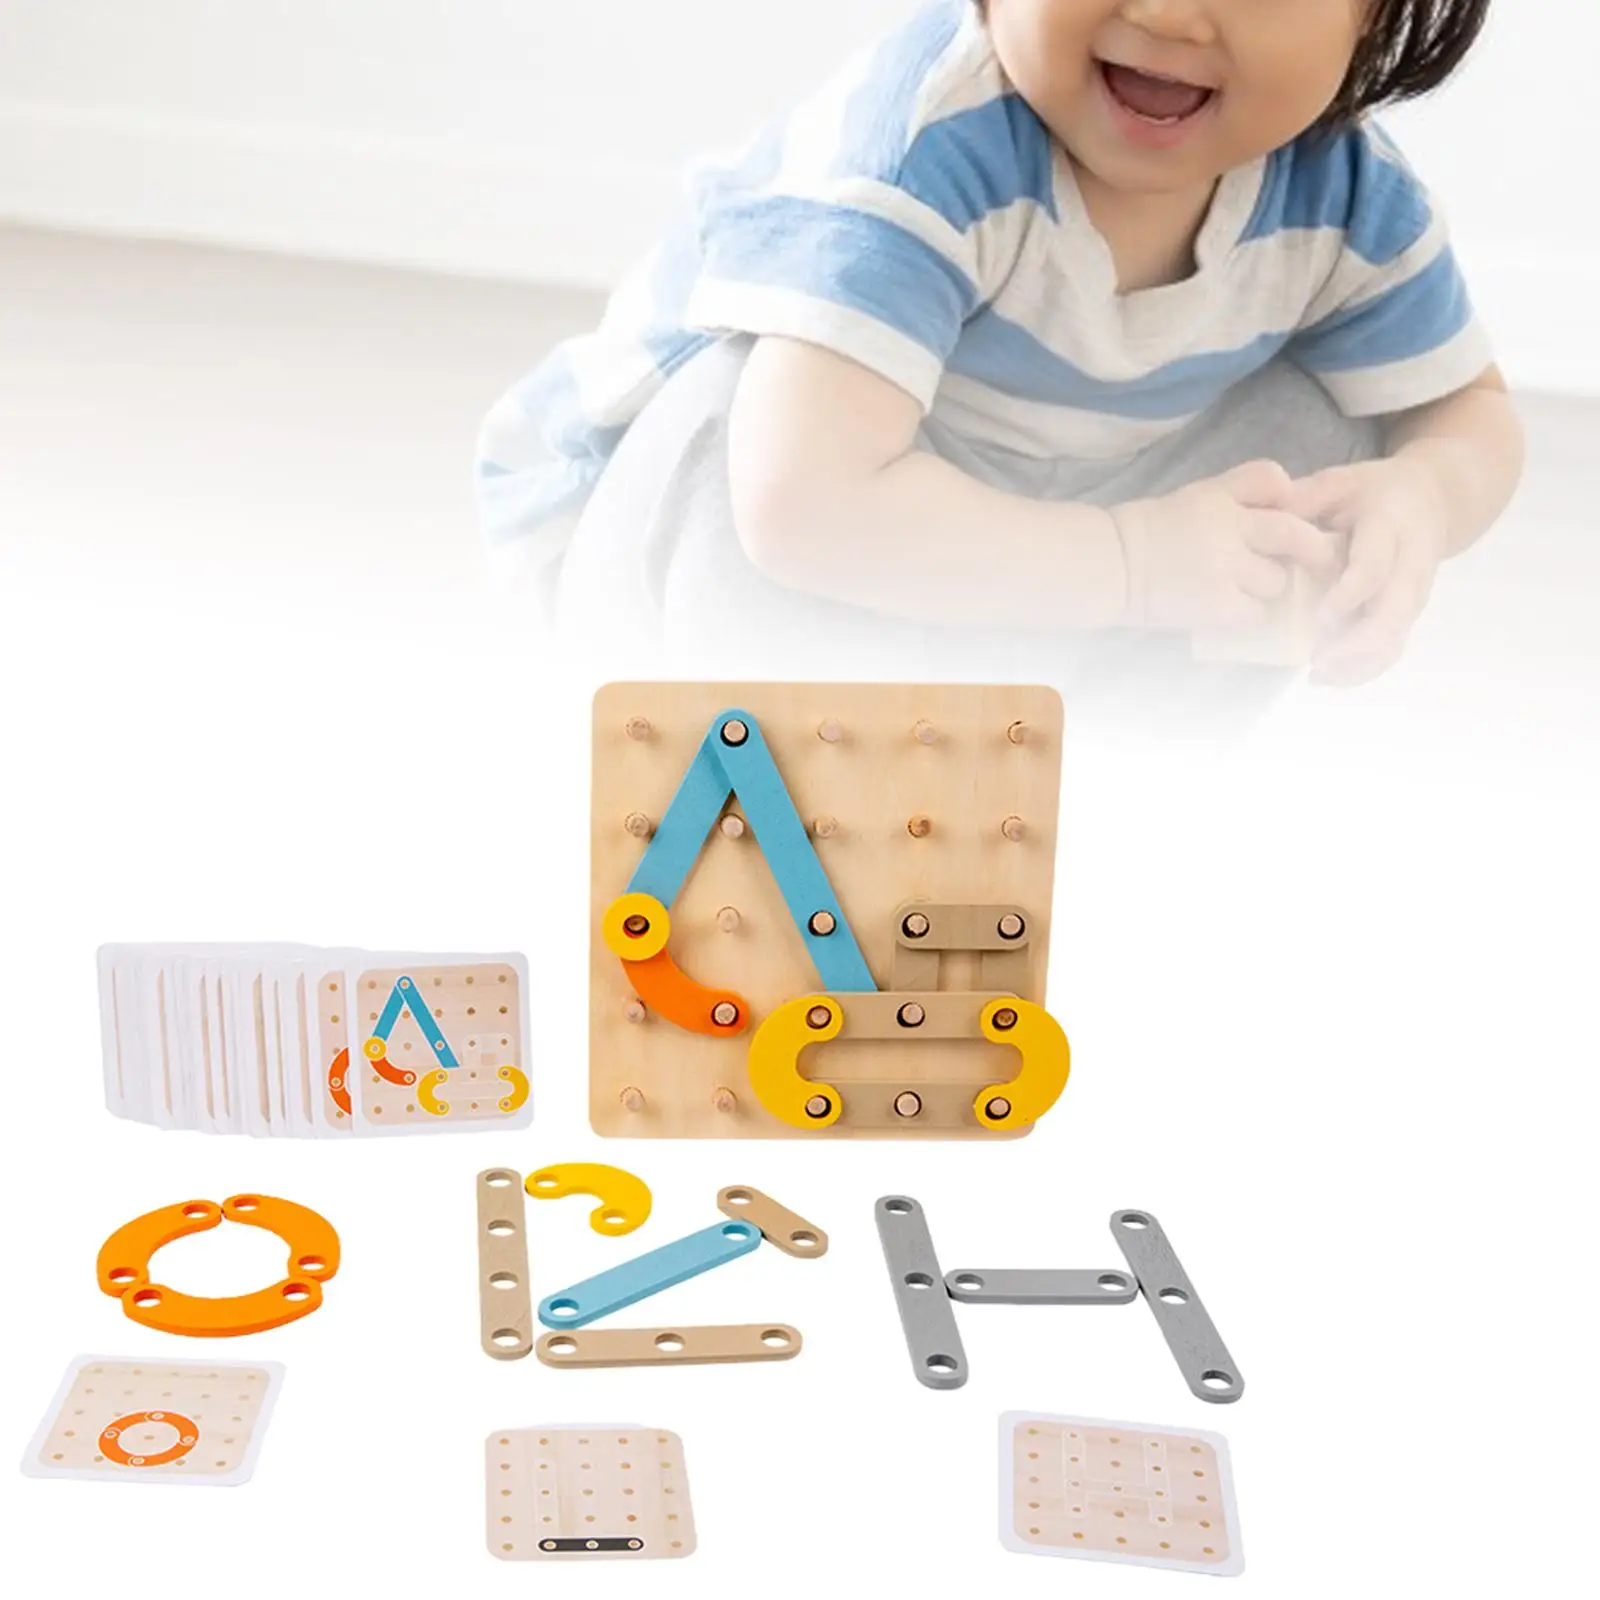 

Пазл для малышей для развития мелкой моторики, Дошкольная обучающая игрушка, головоломка-сортировщик для малышей, подарок на день рождения ребенка 4-6